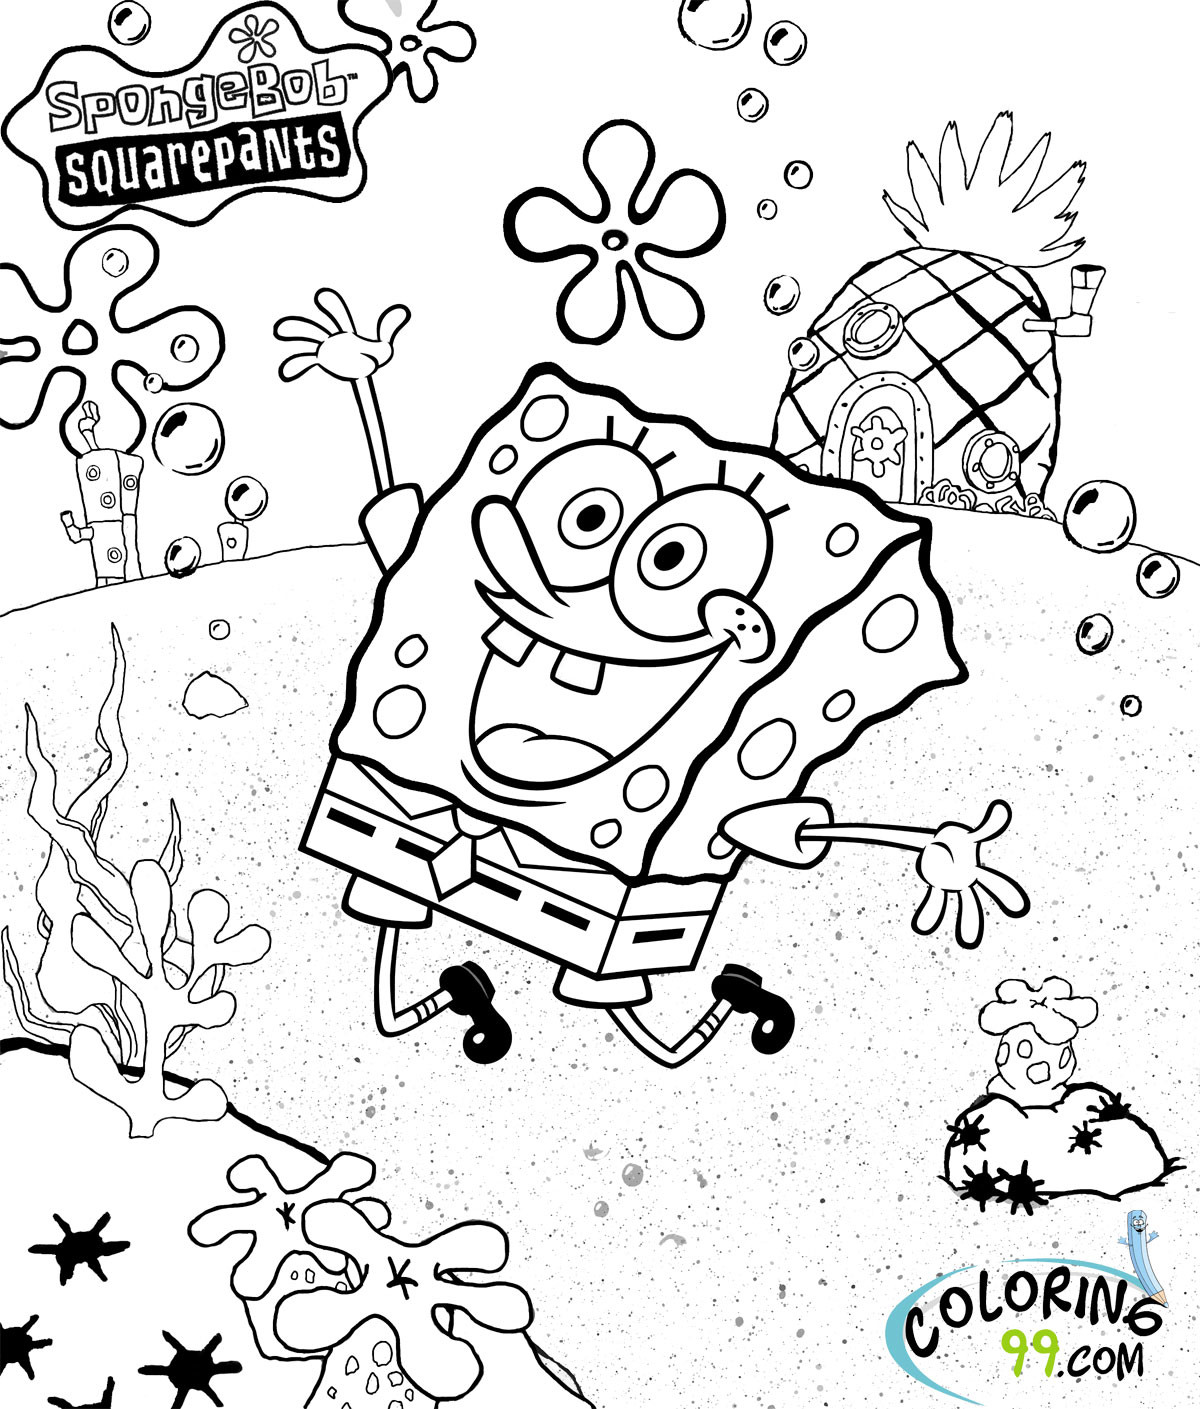 Spongebob Coloring Pages For Kids
 Spongebob Squarepants Coloring Pages